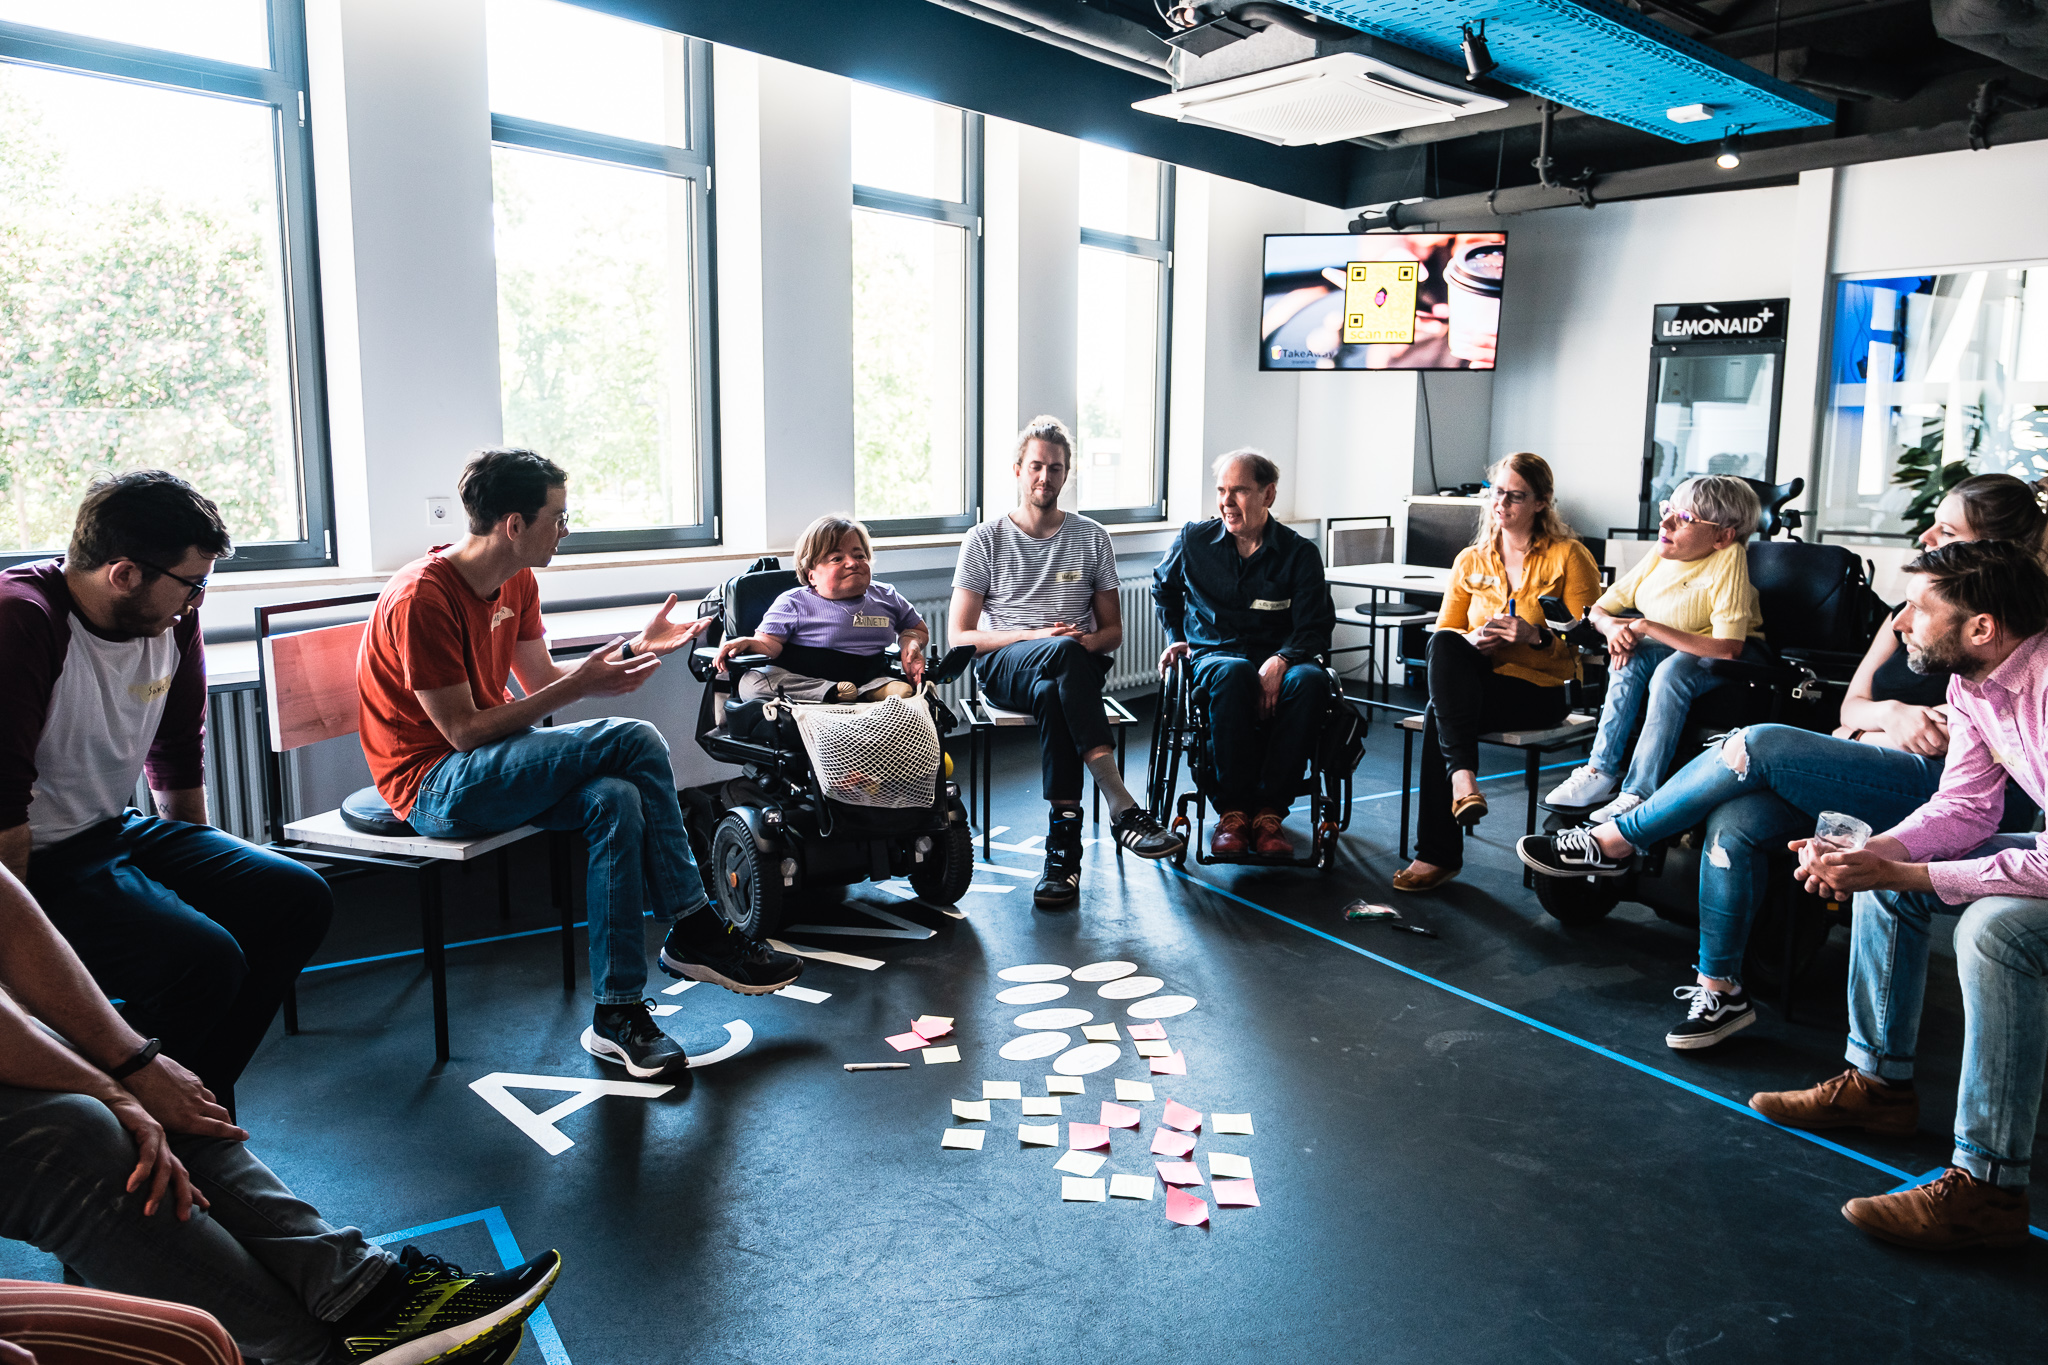 Foto von der Ideenwerkstatt in Leipzig, Die Teilnehmenden sitzen in einem Stuhlkreis. In der Mitte auf dem Boden liegen viele bunte Zettel.